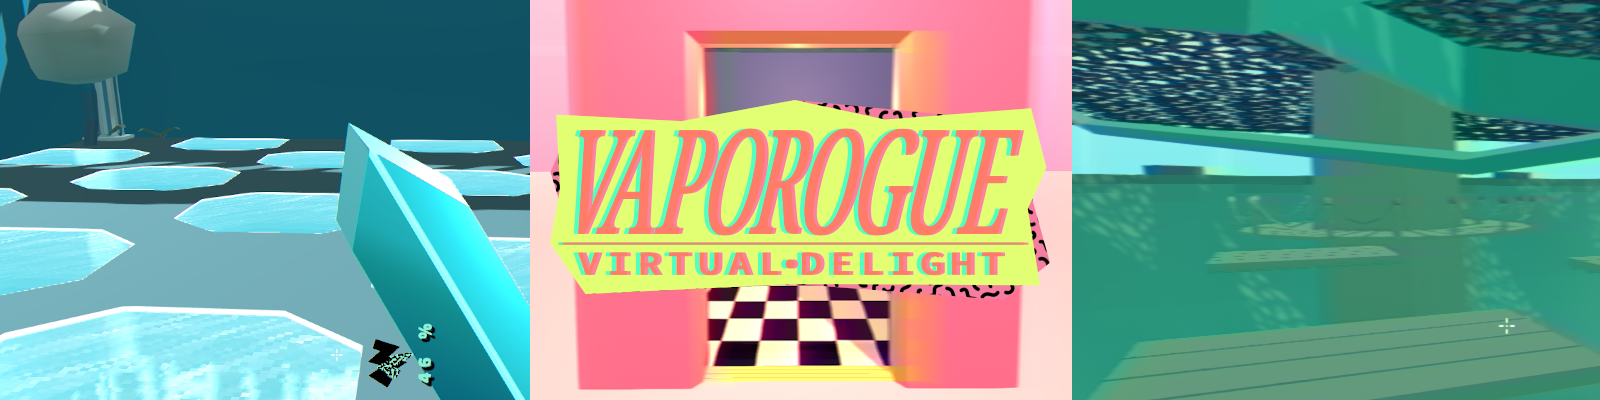 Vaporogue : Virtual Delight